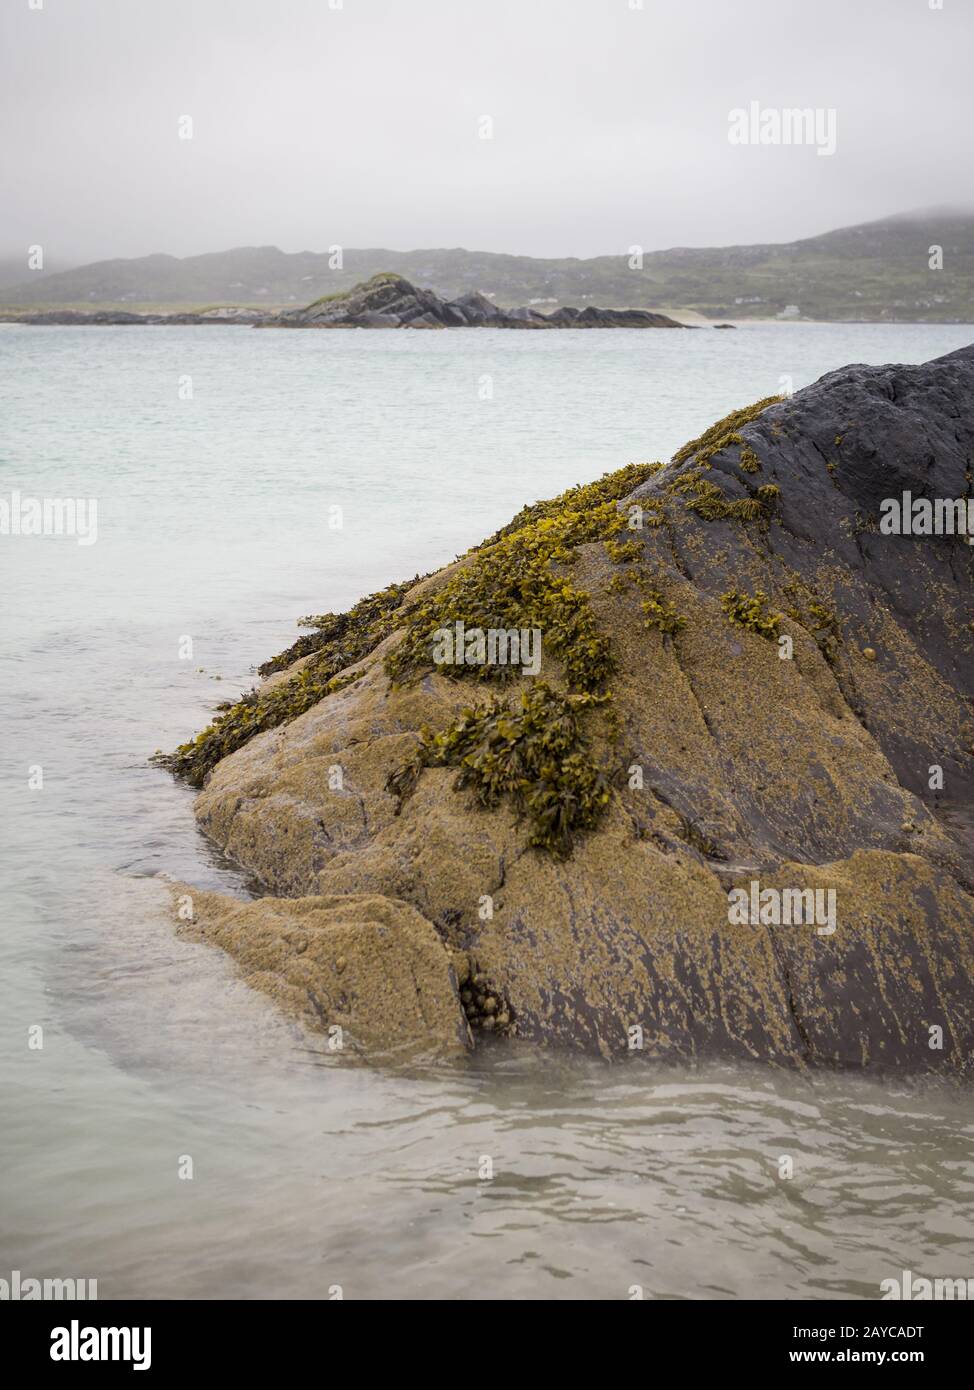 onde sulla costa della penisola di kerry irlanda Foto Stock